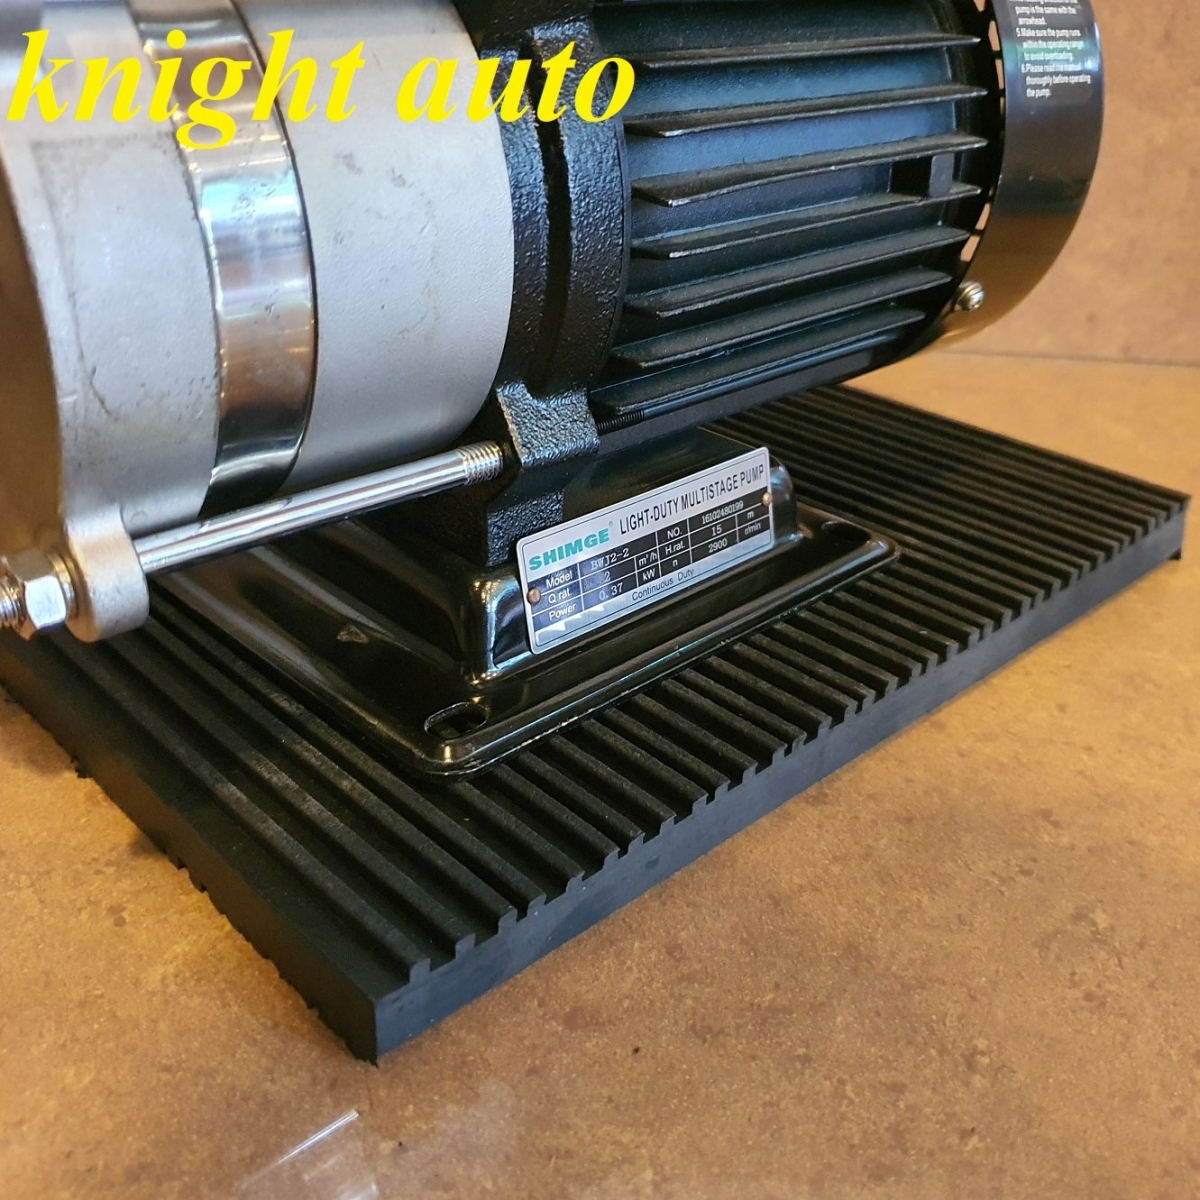 Anti Vibration Rubber Pad 20thk x 300w x 200L mm for water pump ID33307  Accessories Water